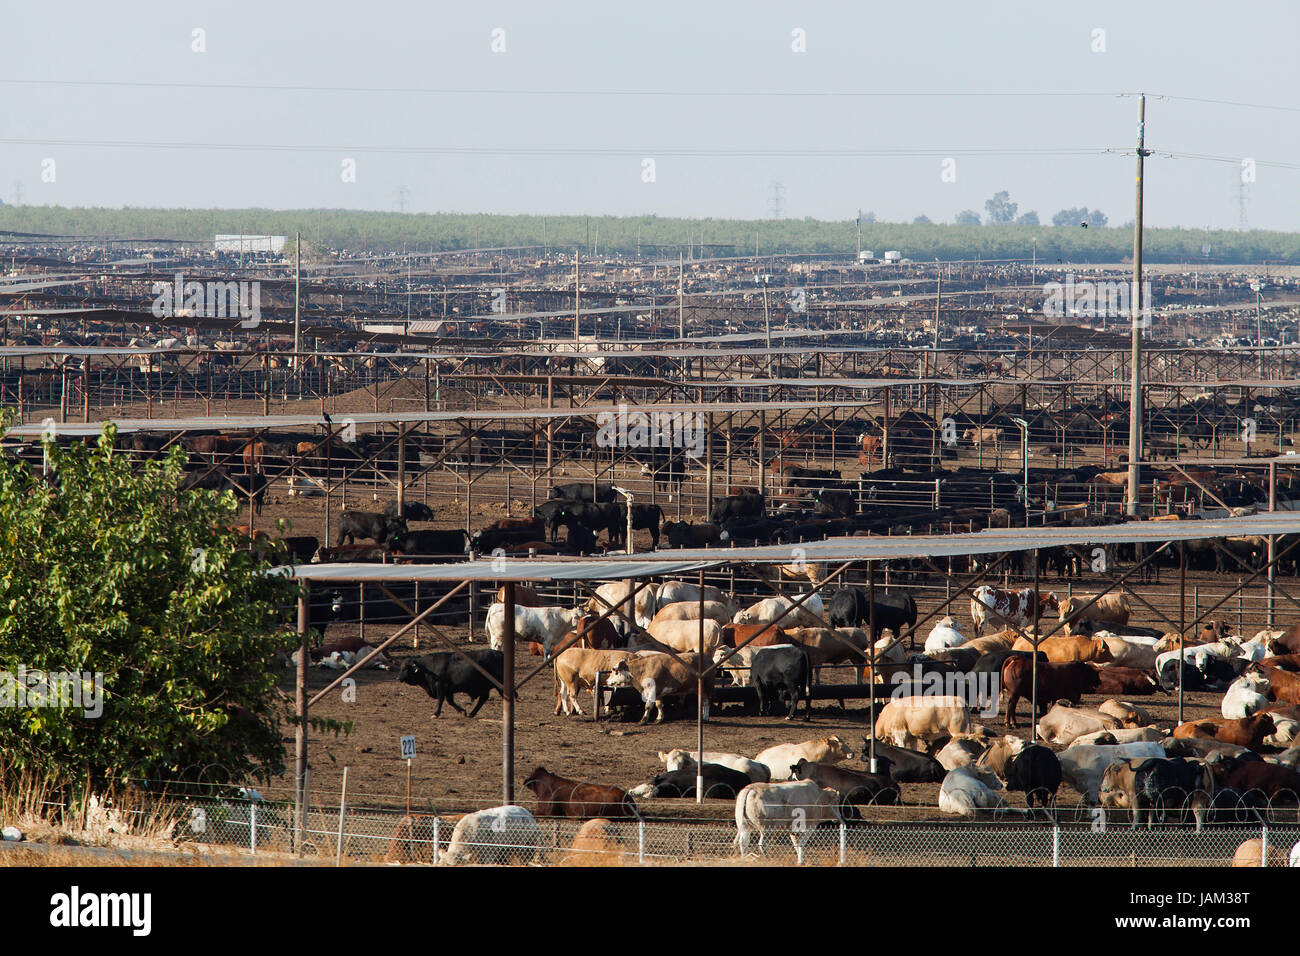 Large scale cattle farm - California USA Stock Photo